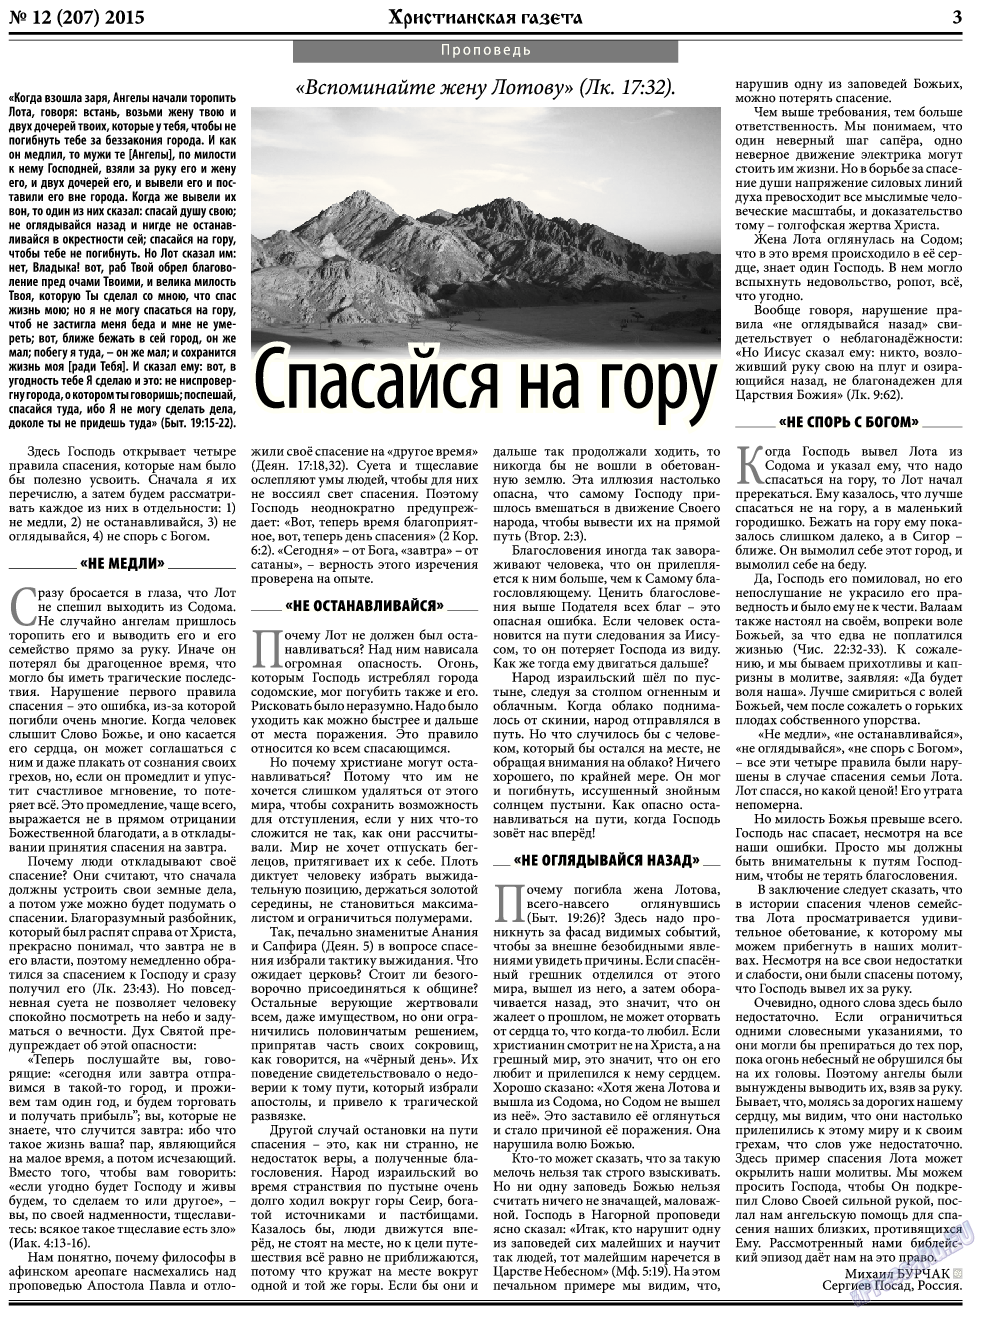 Христианская газета, газета. 2015 №12 стр.3